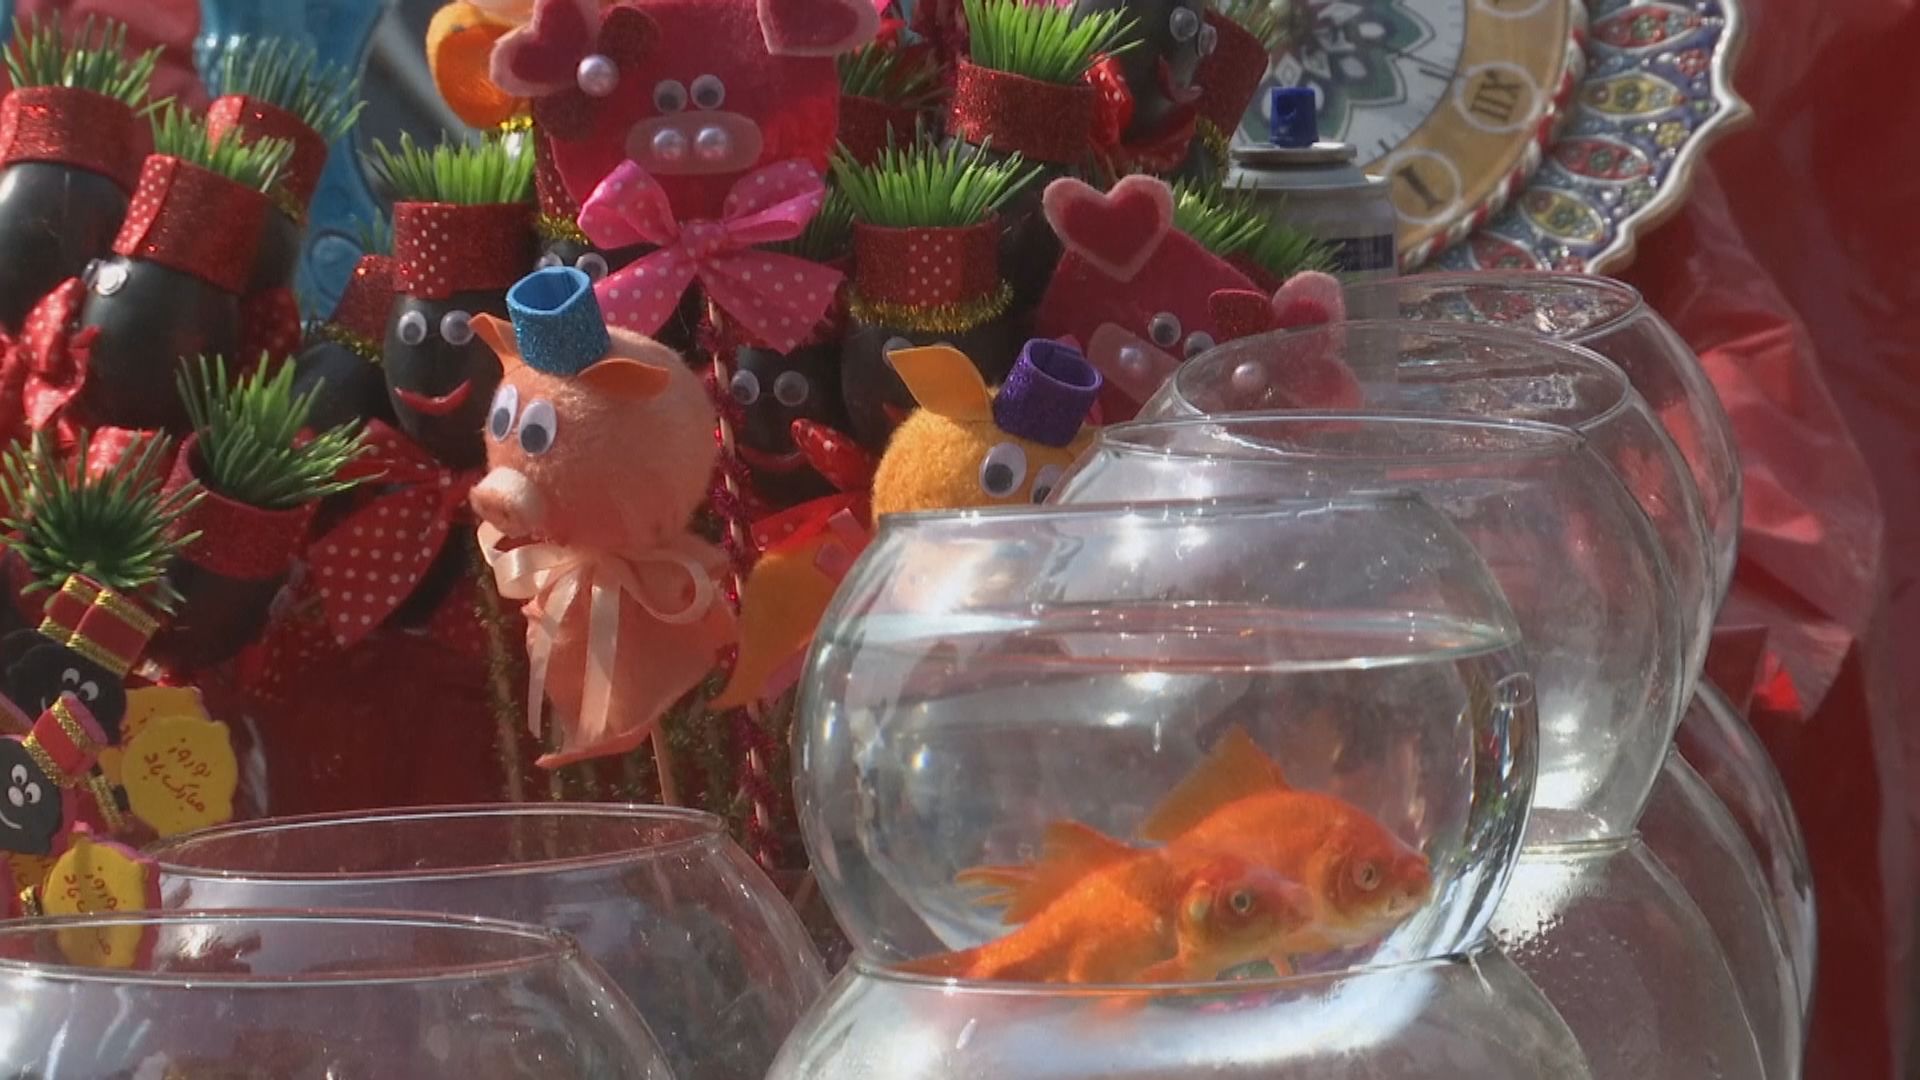 【環球薈報】比利時計劃禁售圓形魚缸